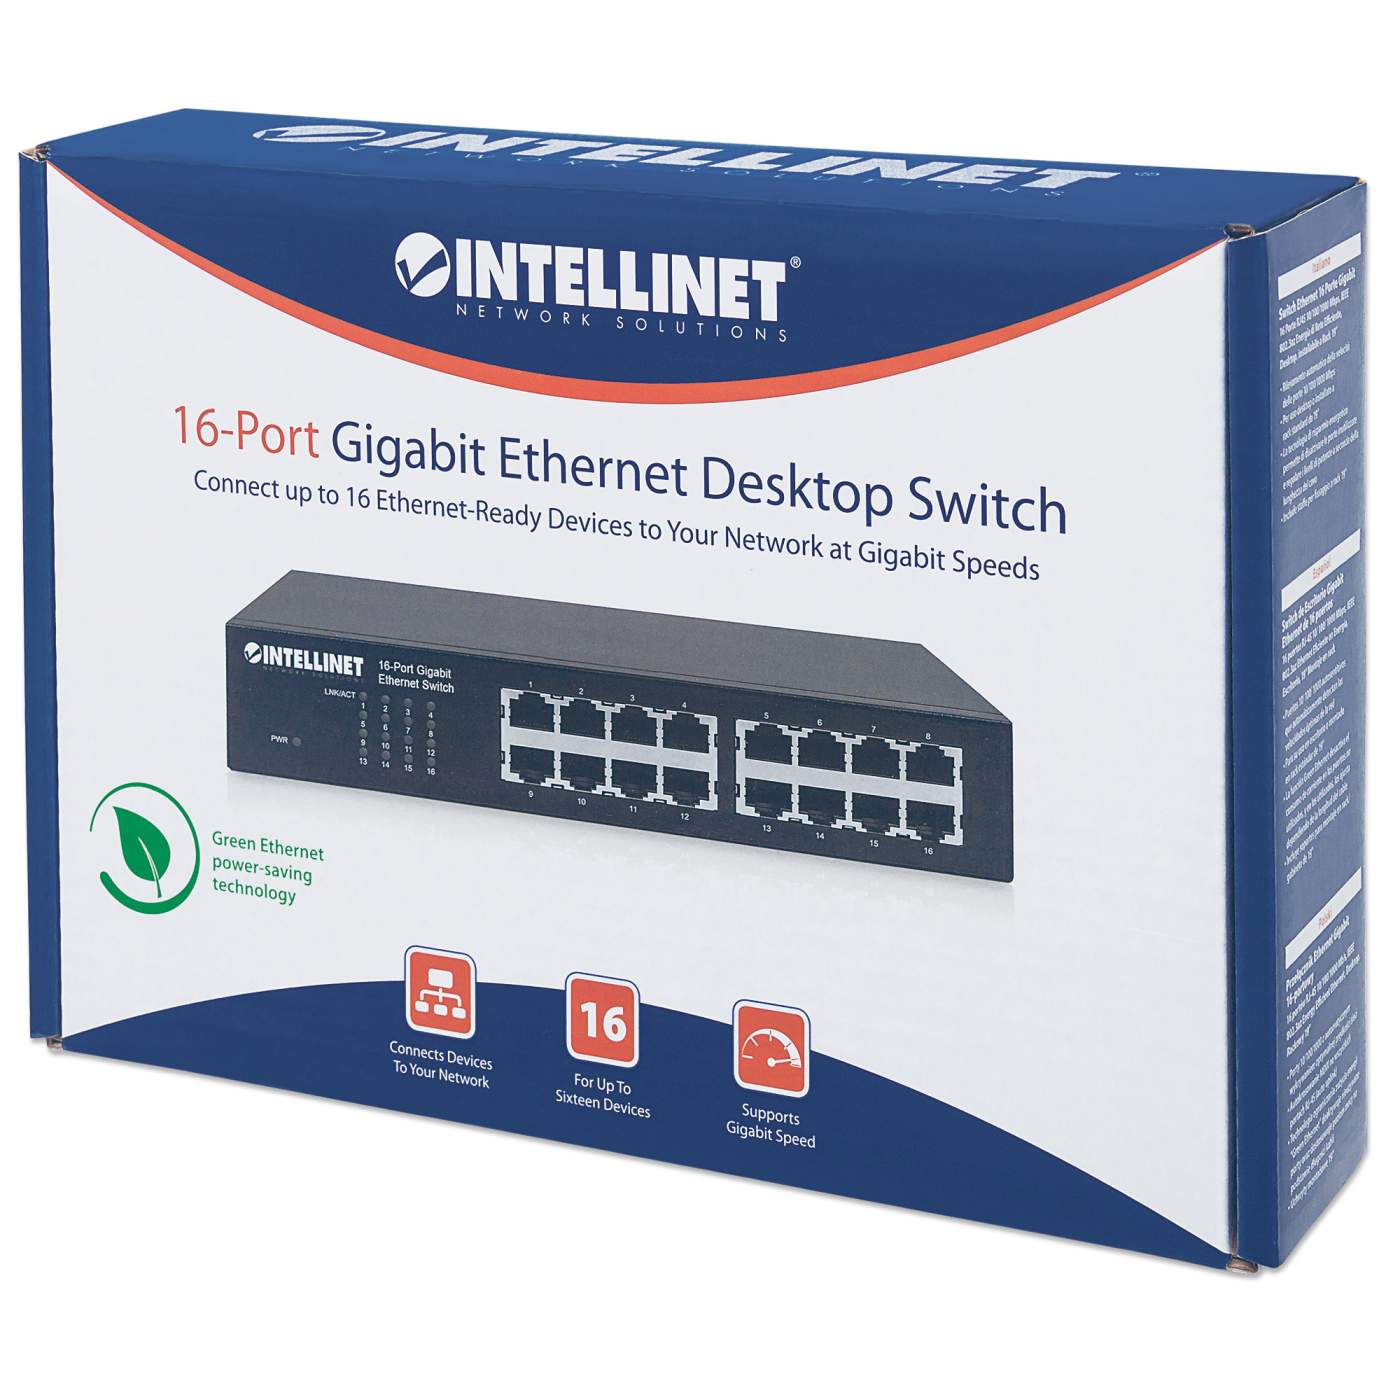 16-Port Gigabit Ethernet Switch Packaging Image 2